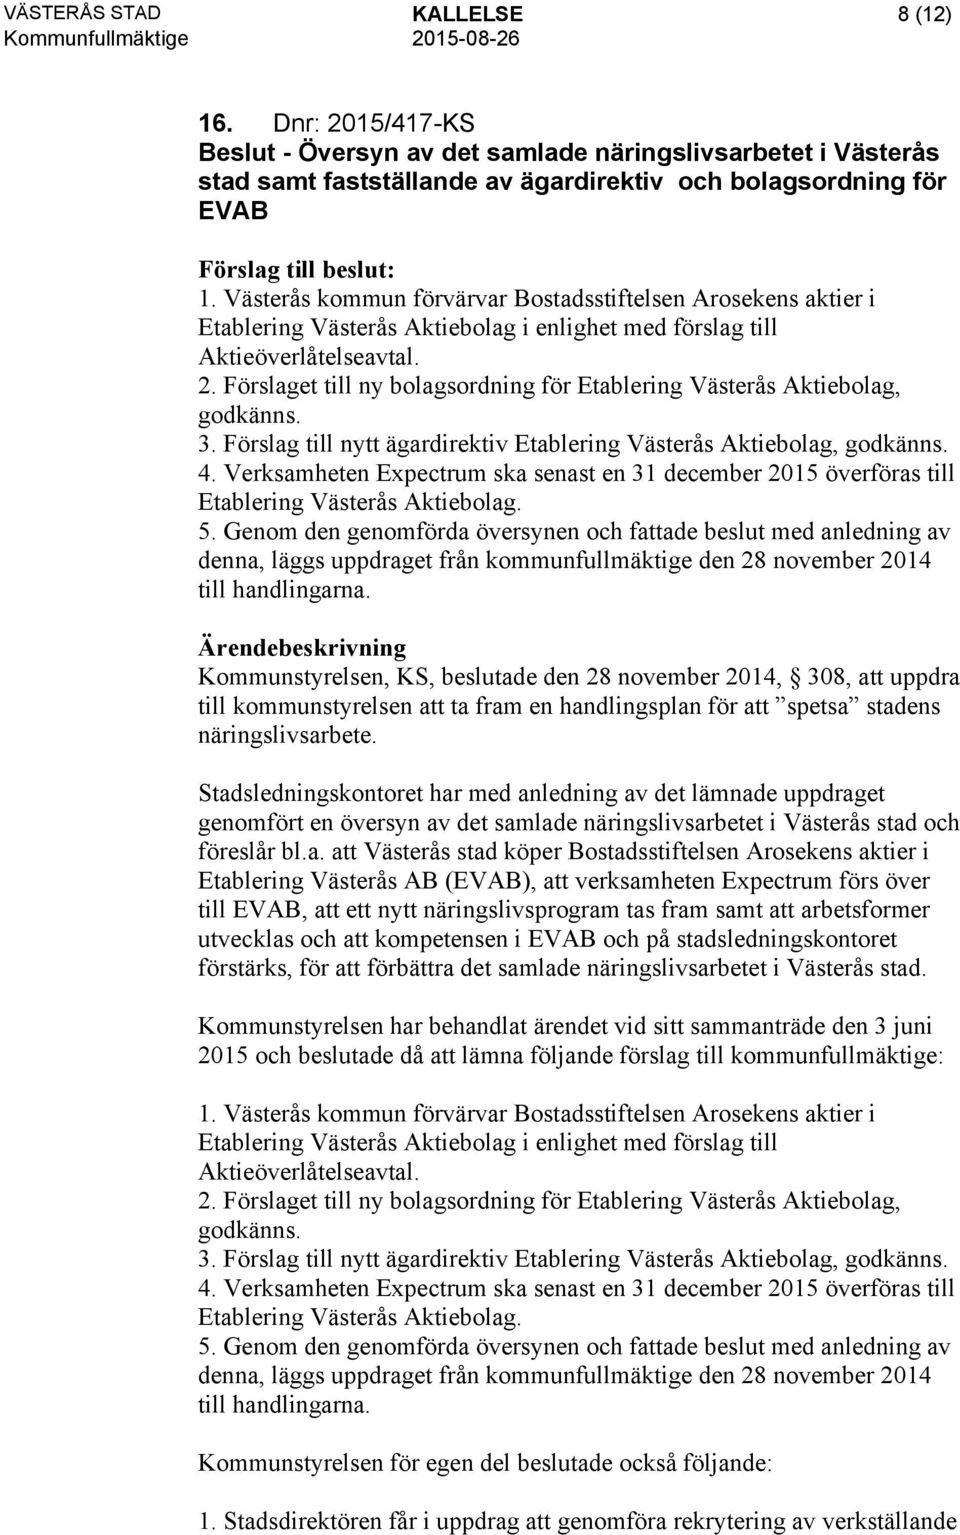 Förslaget till ny bolagsordning för Etablering Västerås Aktiebolag, godkänns. 3. Förslag till nytt ägardirektiv Etablering Västerås Aktiebolag, godkänns. 4.